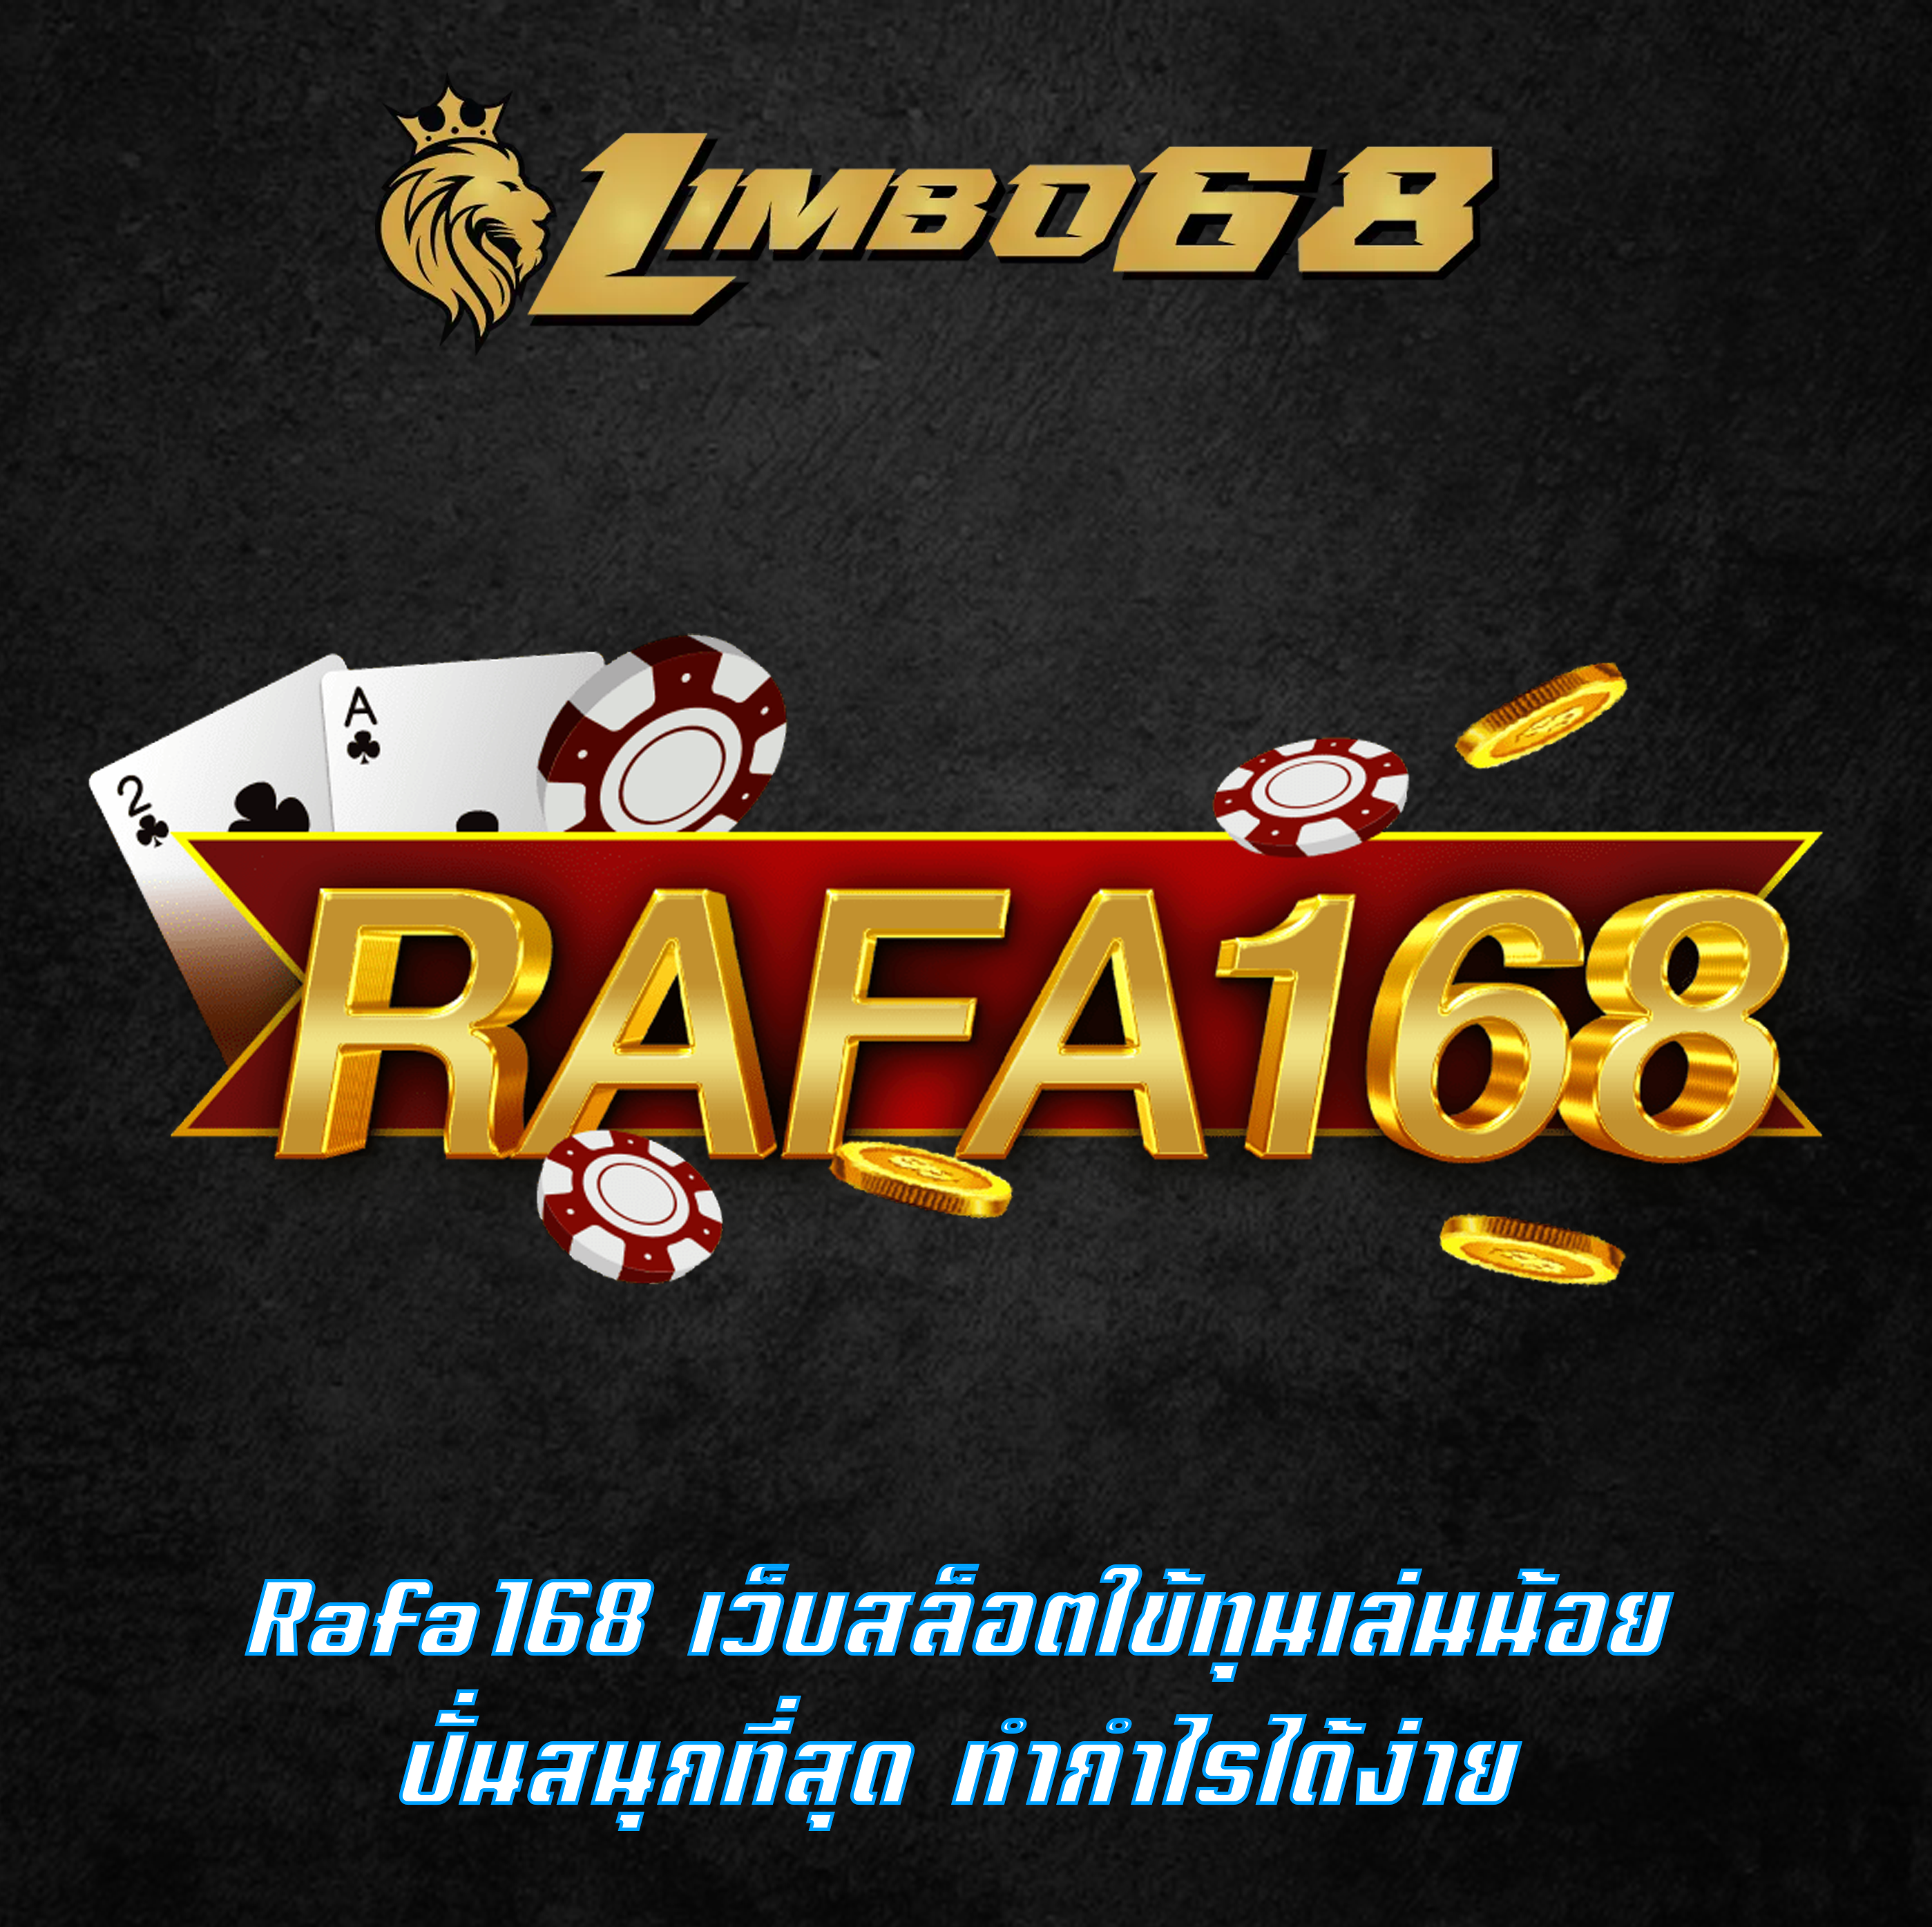 Rafa168